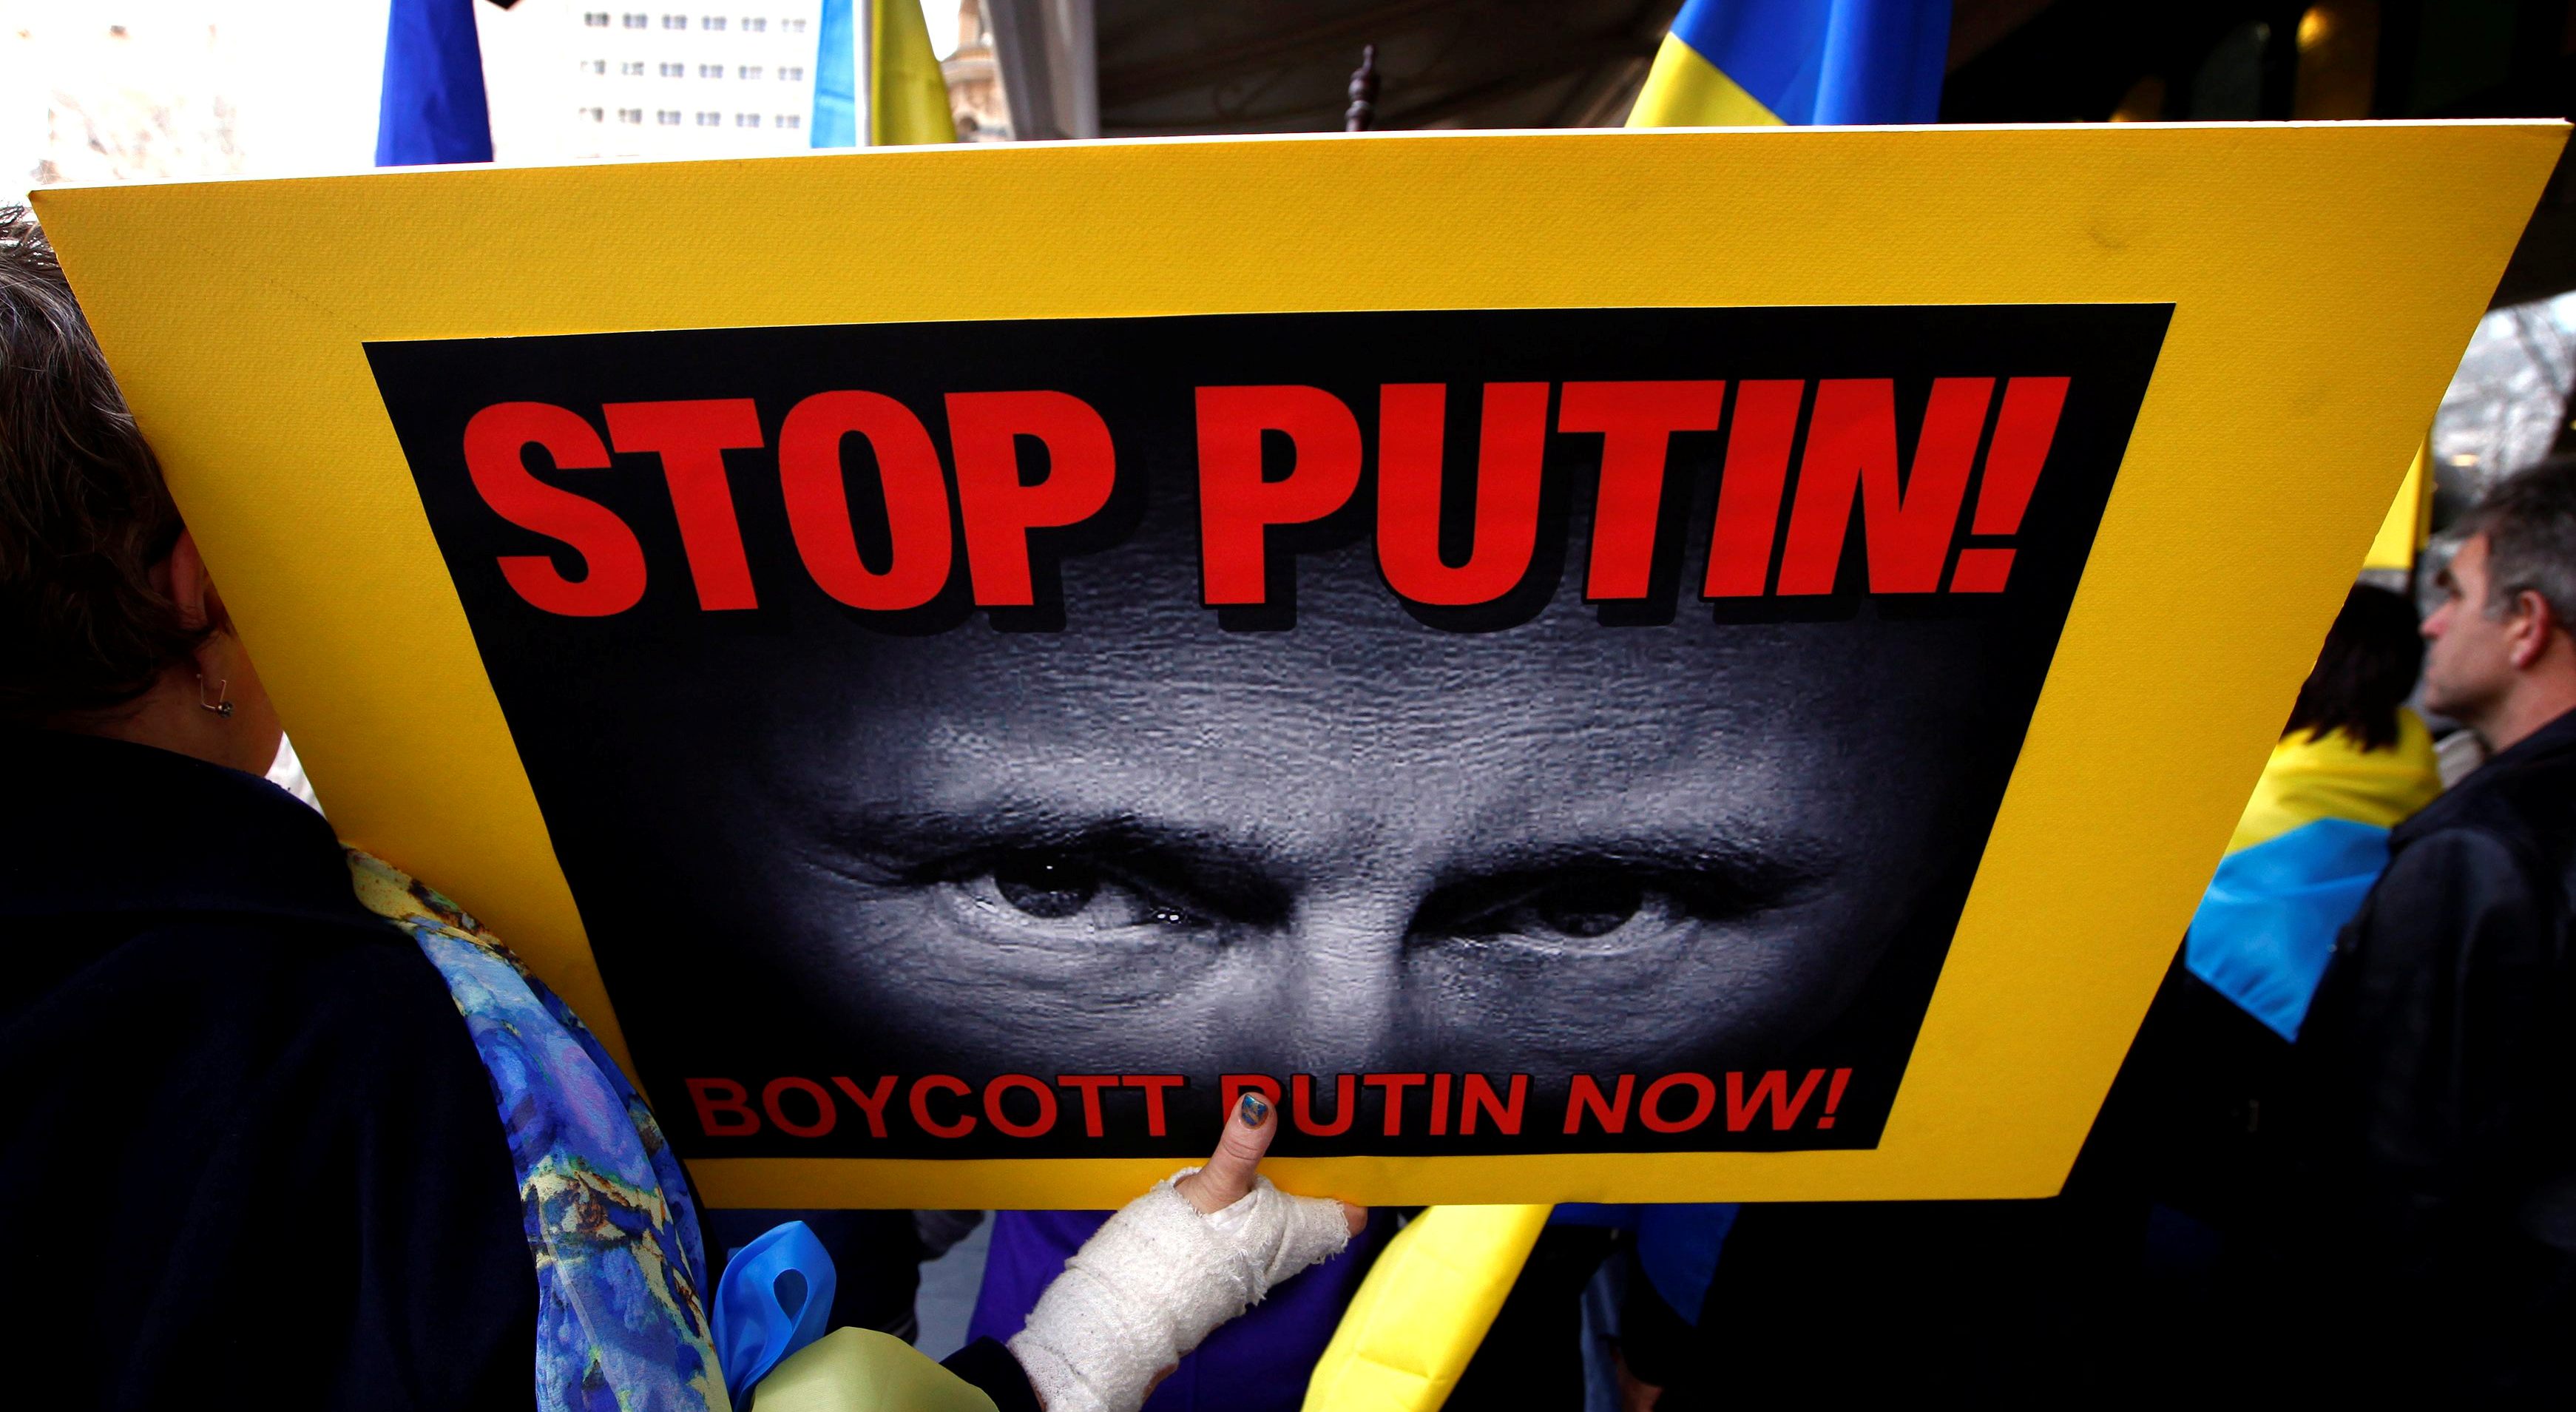 Жалкие попытки Путина сопротивляться бесполезны: Россия уже платит за аннексию Крыма санкциями оглушительного масштаба - Шевцова